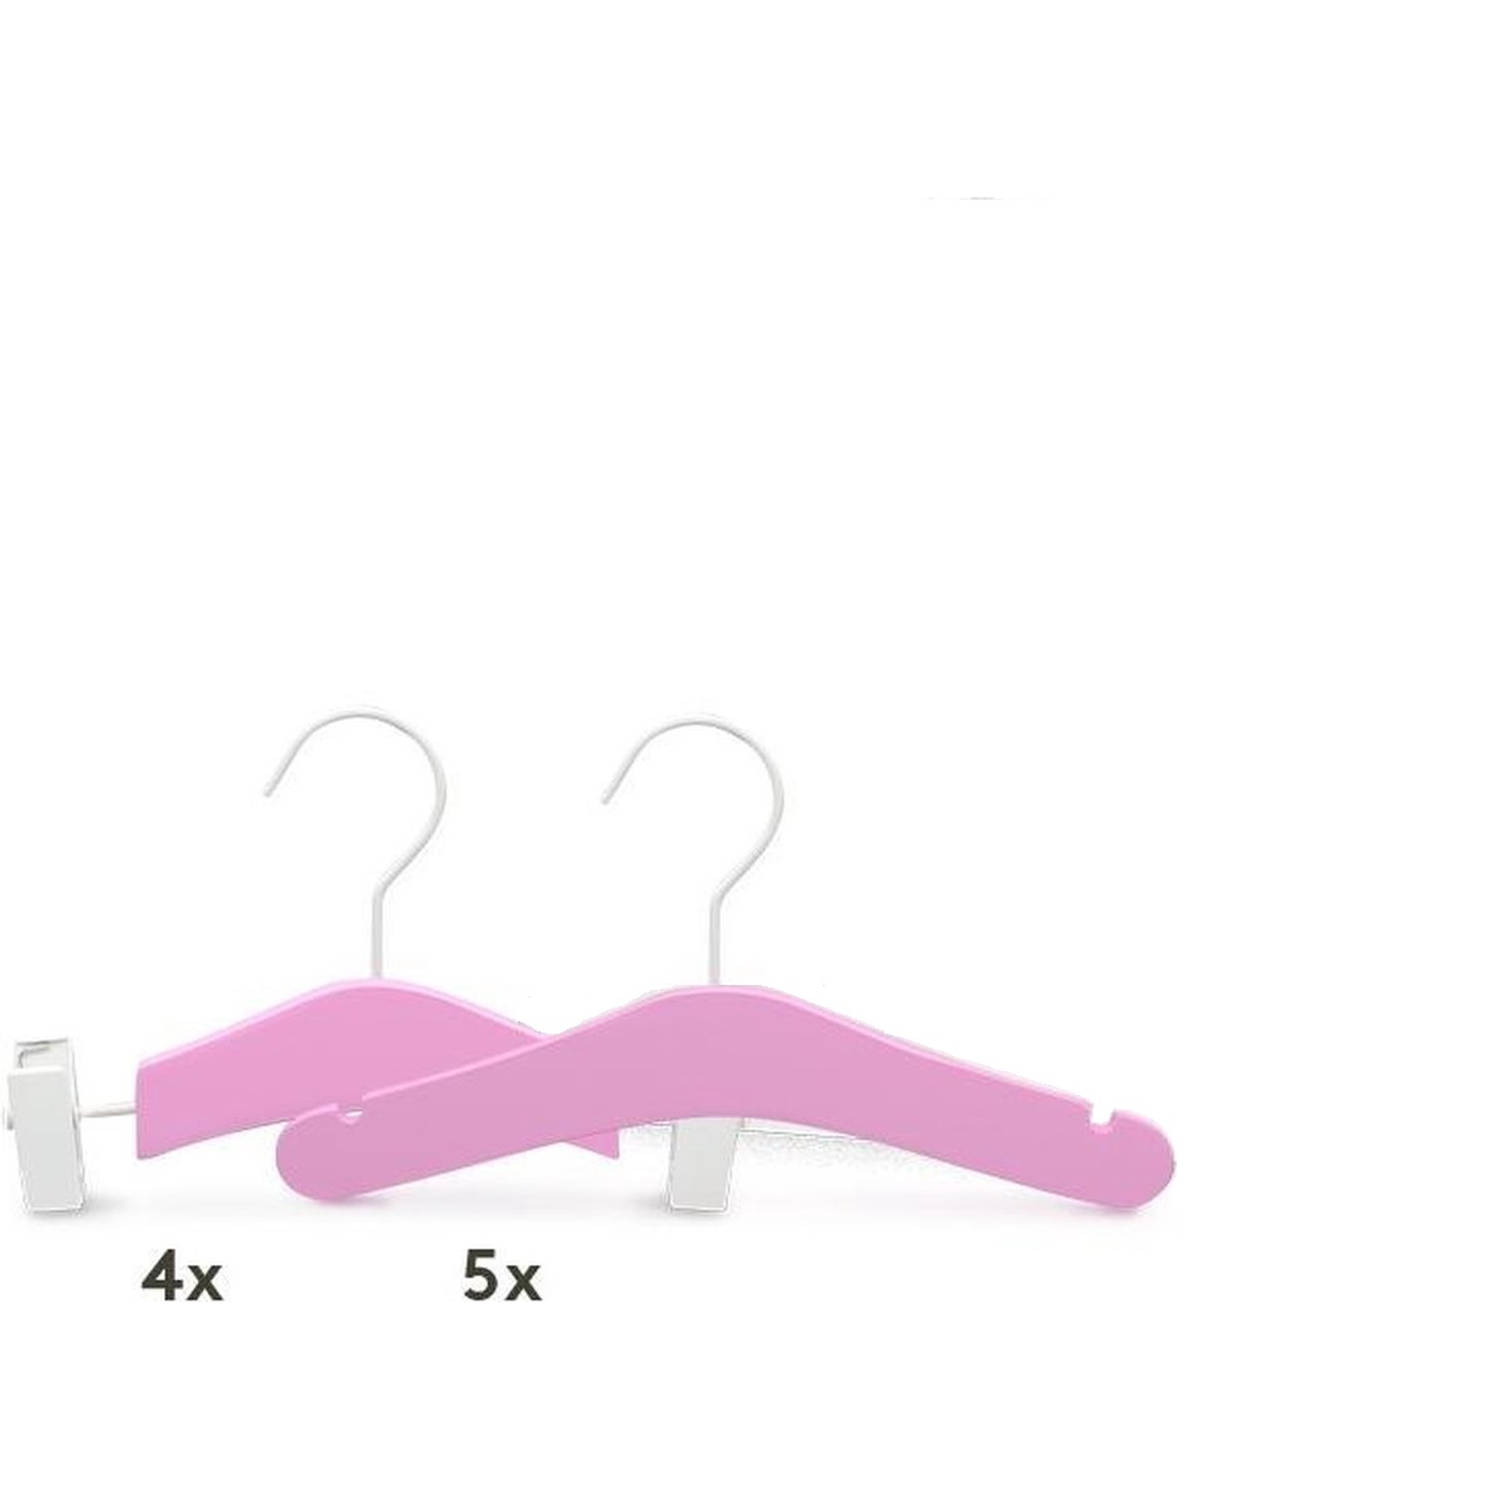 Relaxwonen - Baby kledinghangers - Set van 9 - Paars - Broek en kledinghangers - extra stevig